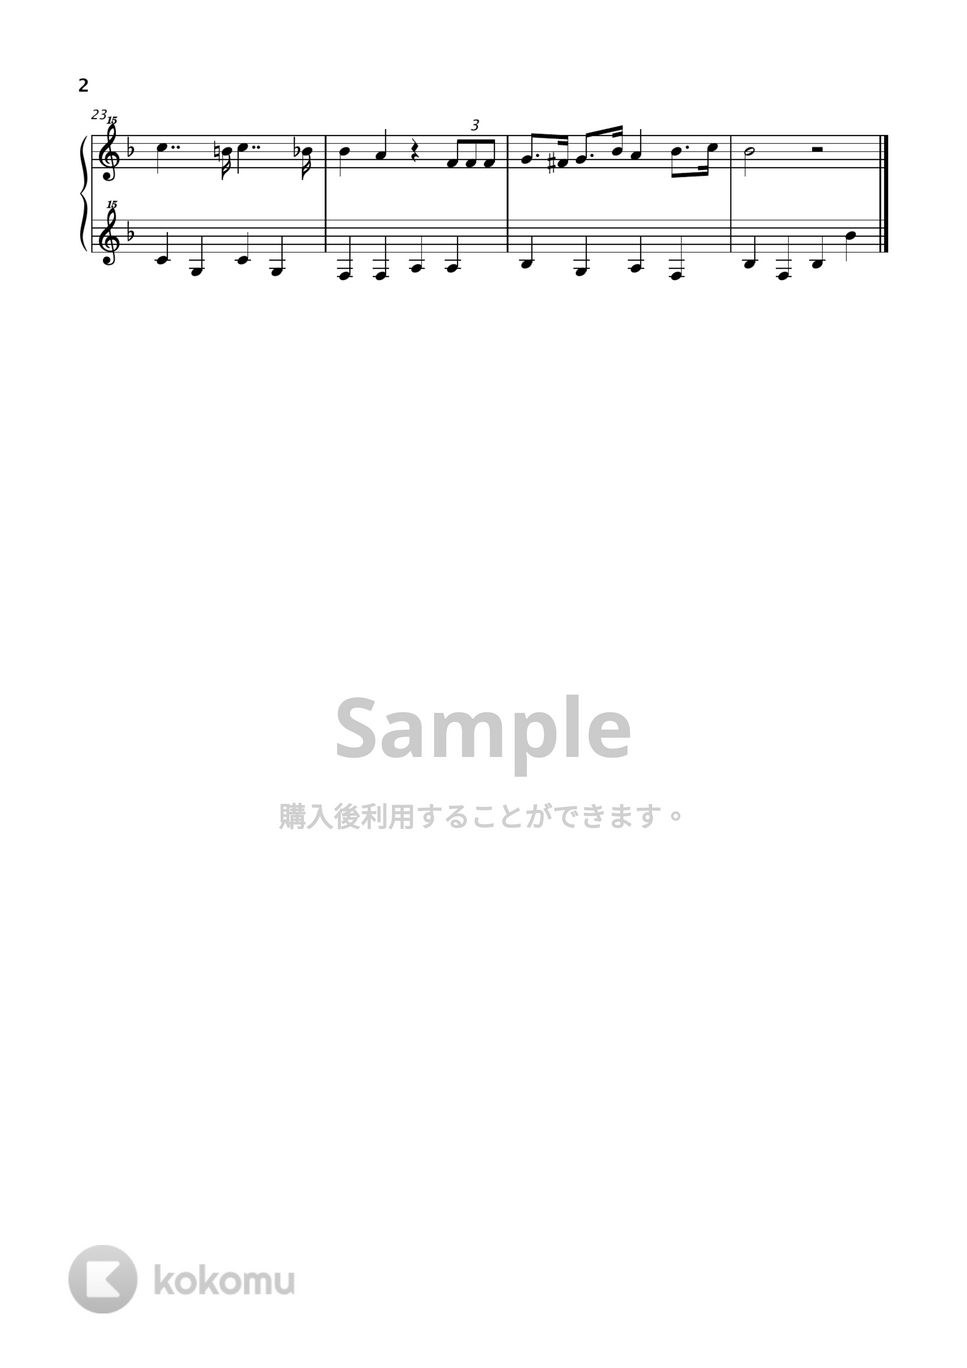 世界中のこどもたちが (トイピアノ / 25鍵盤) by Miyuh Kawanishi